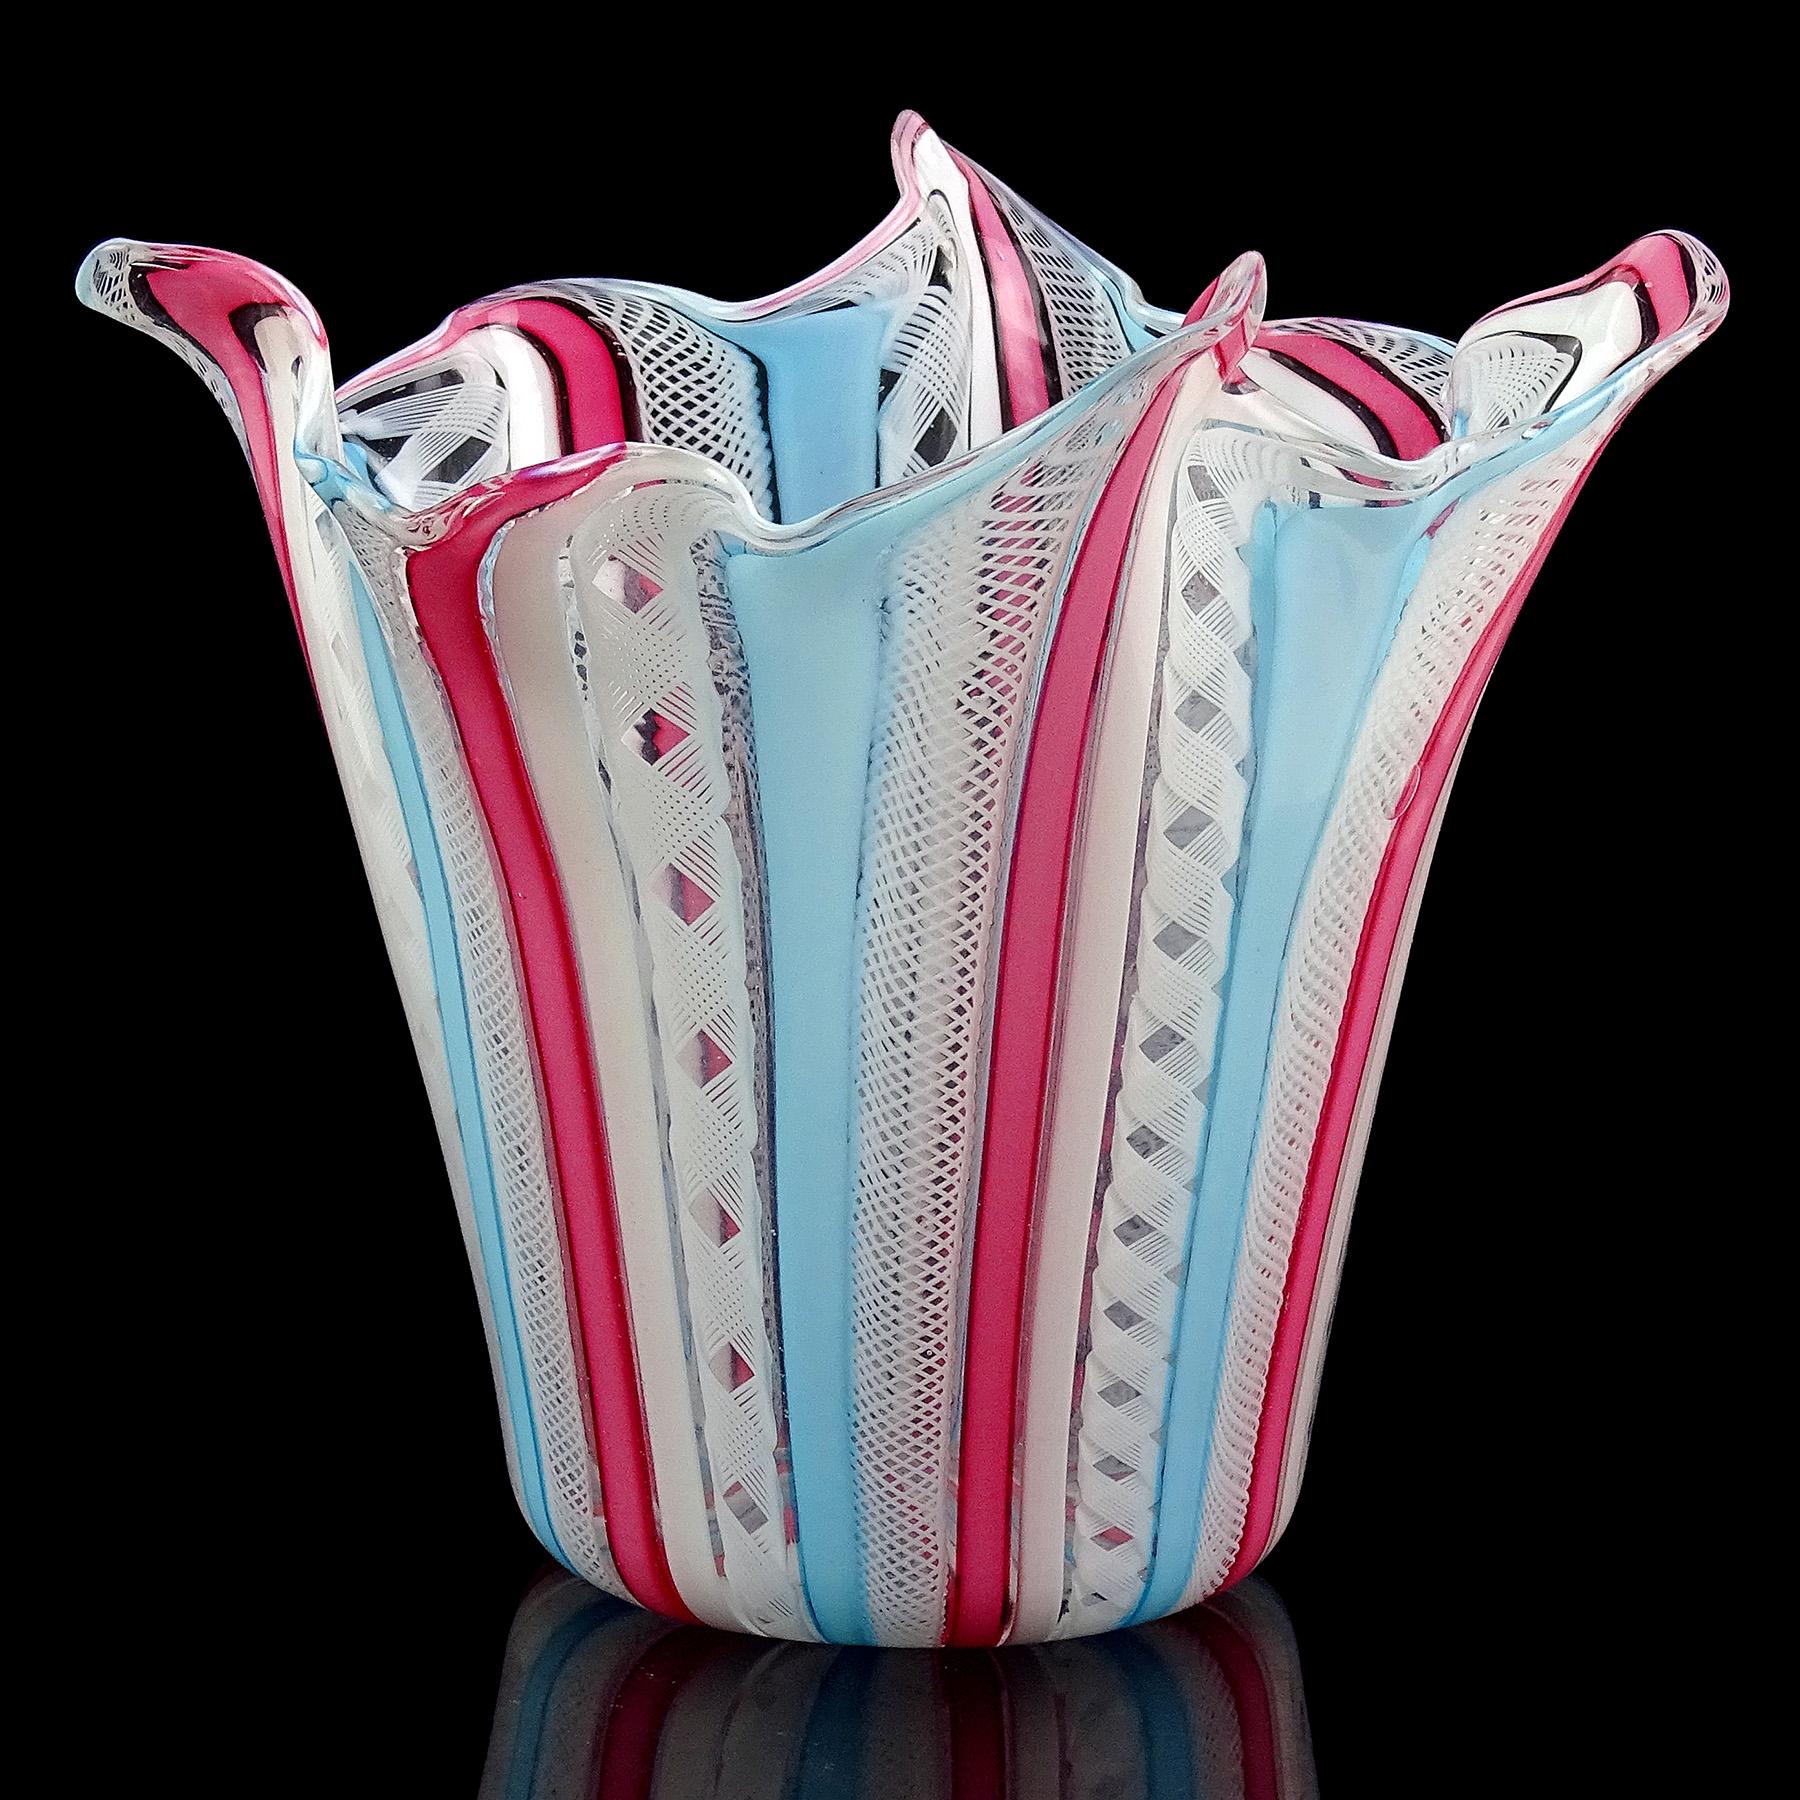 Gorgeous Vintage Murano mundgeblasen rosa, himmelblau und weißen Bändern italienische Kunst Glas Taschentuch / Fazzoletto Vase. Dokumentiert auf die Firma Fratelli Toso, mit teilweise noch angebrachtem blau-silbernem Originaletikett. Das